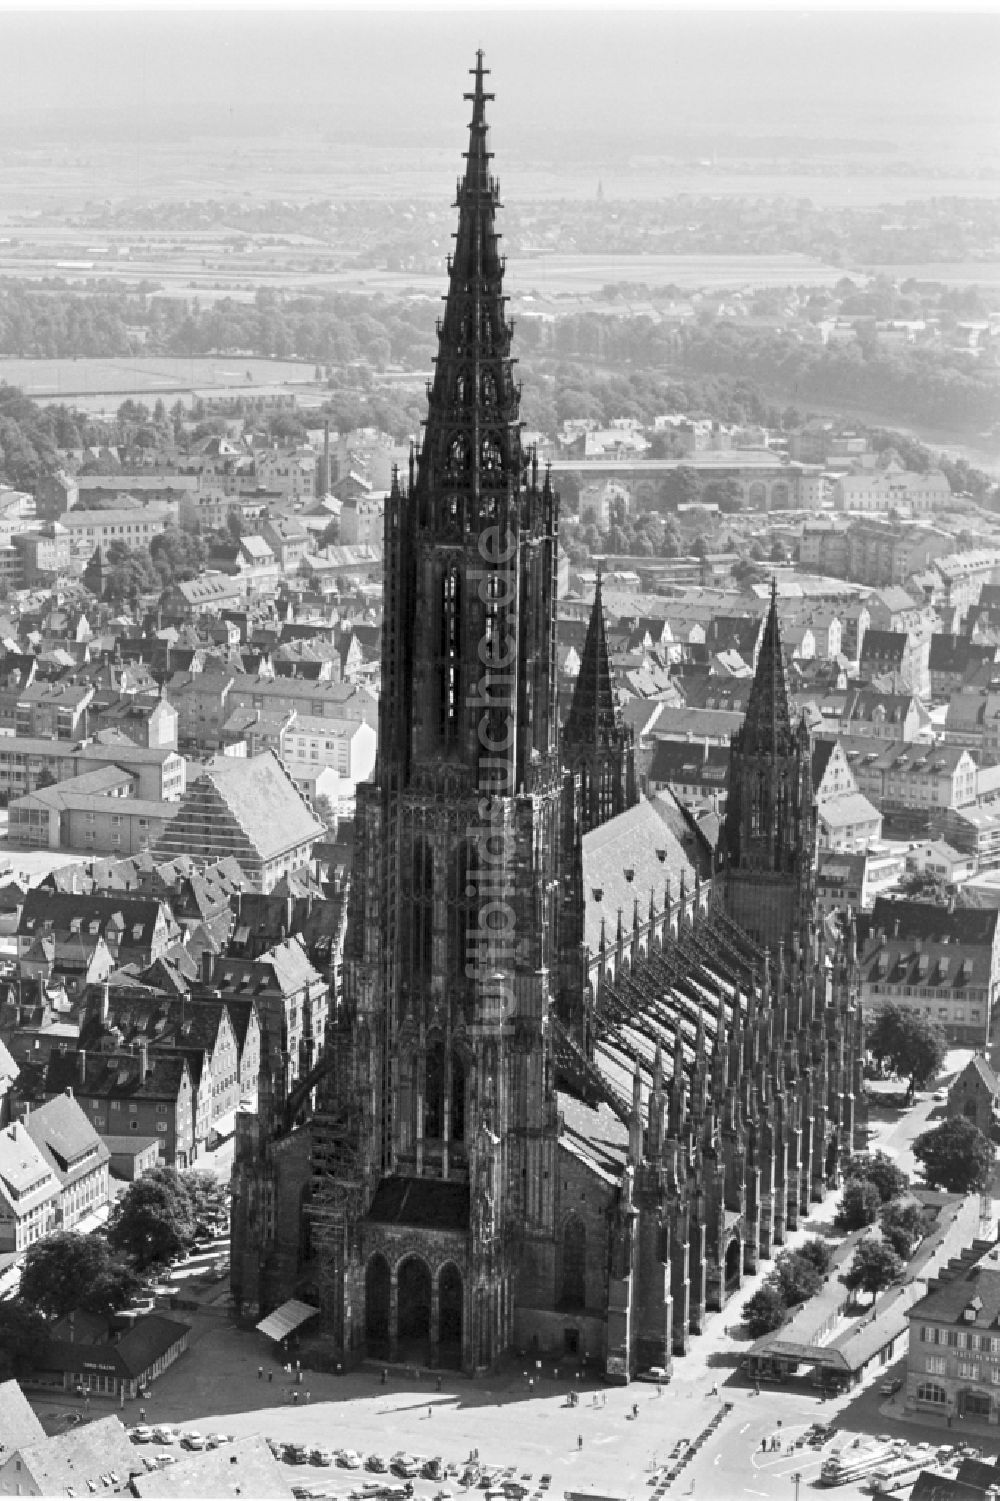 Ulm von oben - Kathedrale Ulmer Münster in Ulm im Bundesland Baden-Württemberg, Deutschland